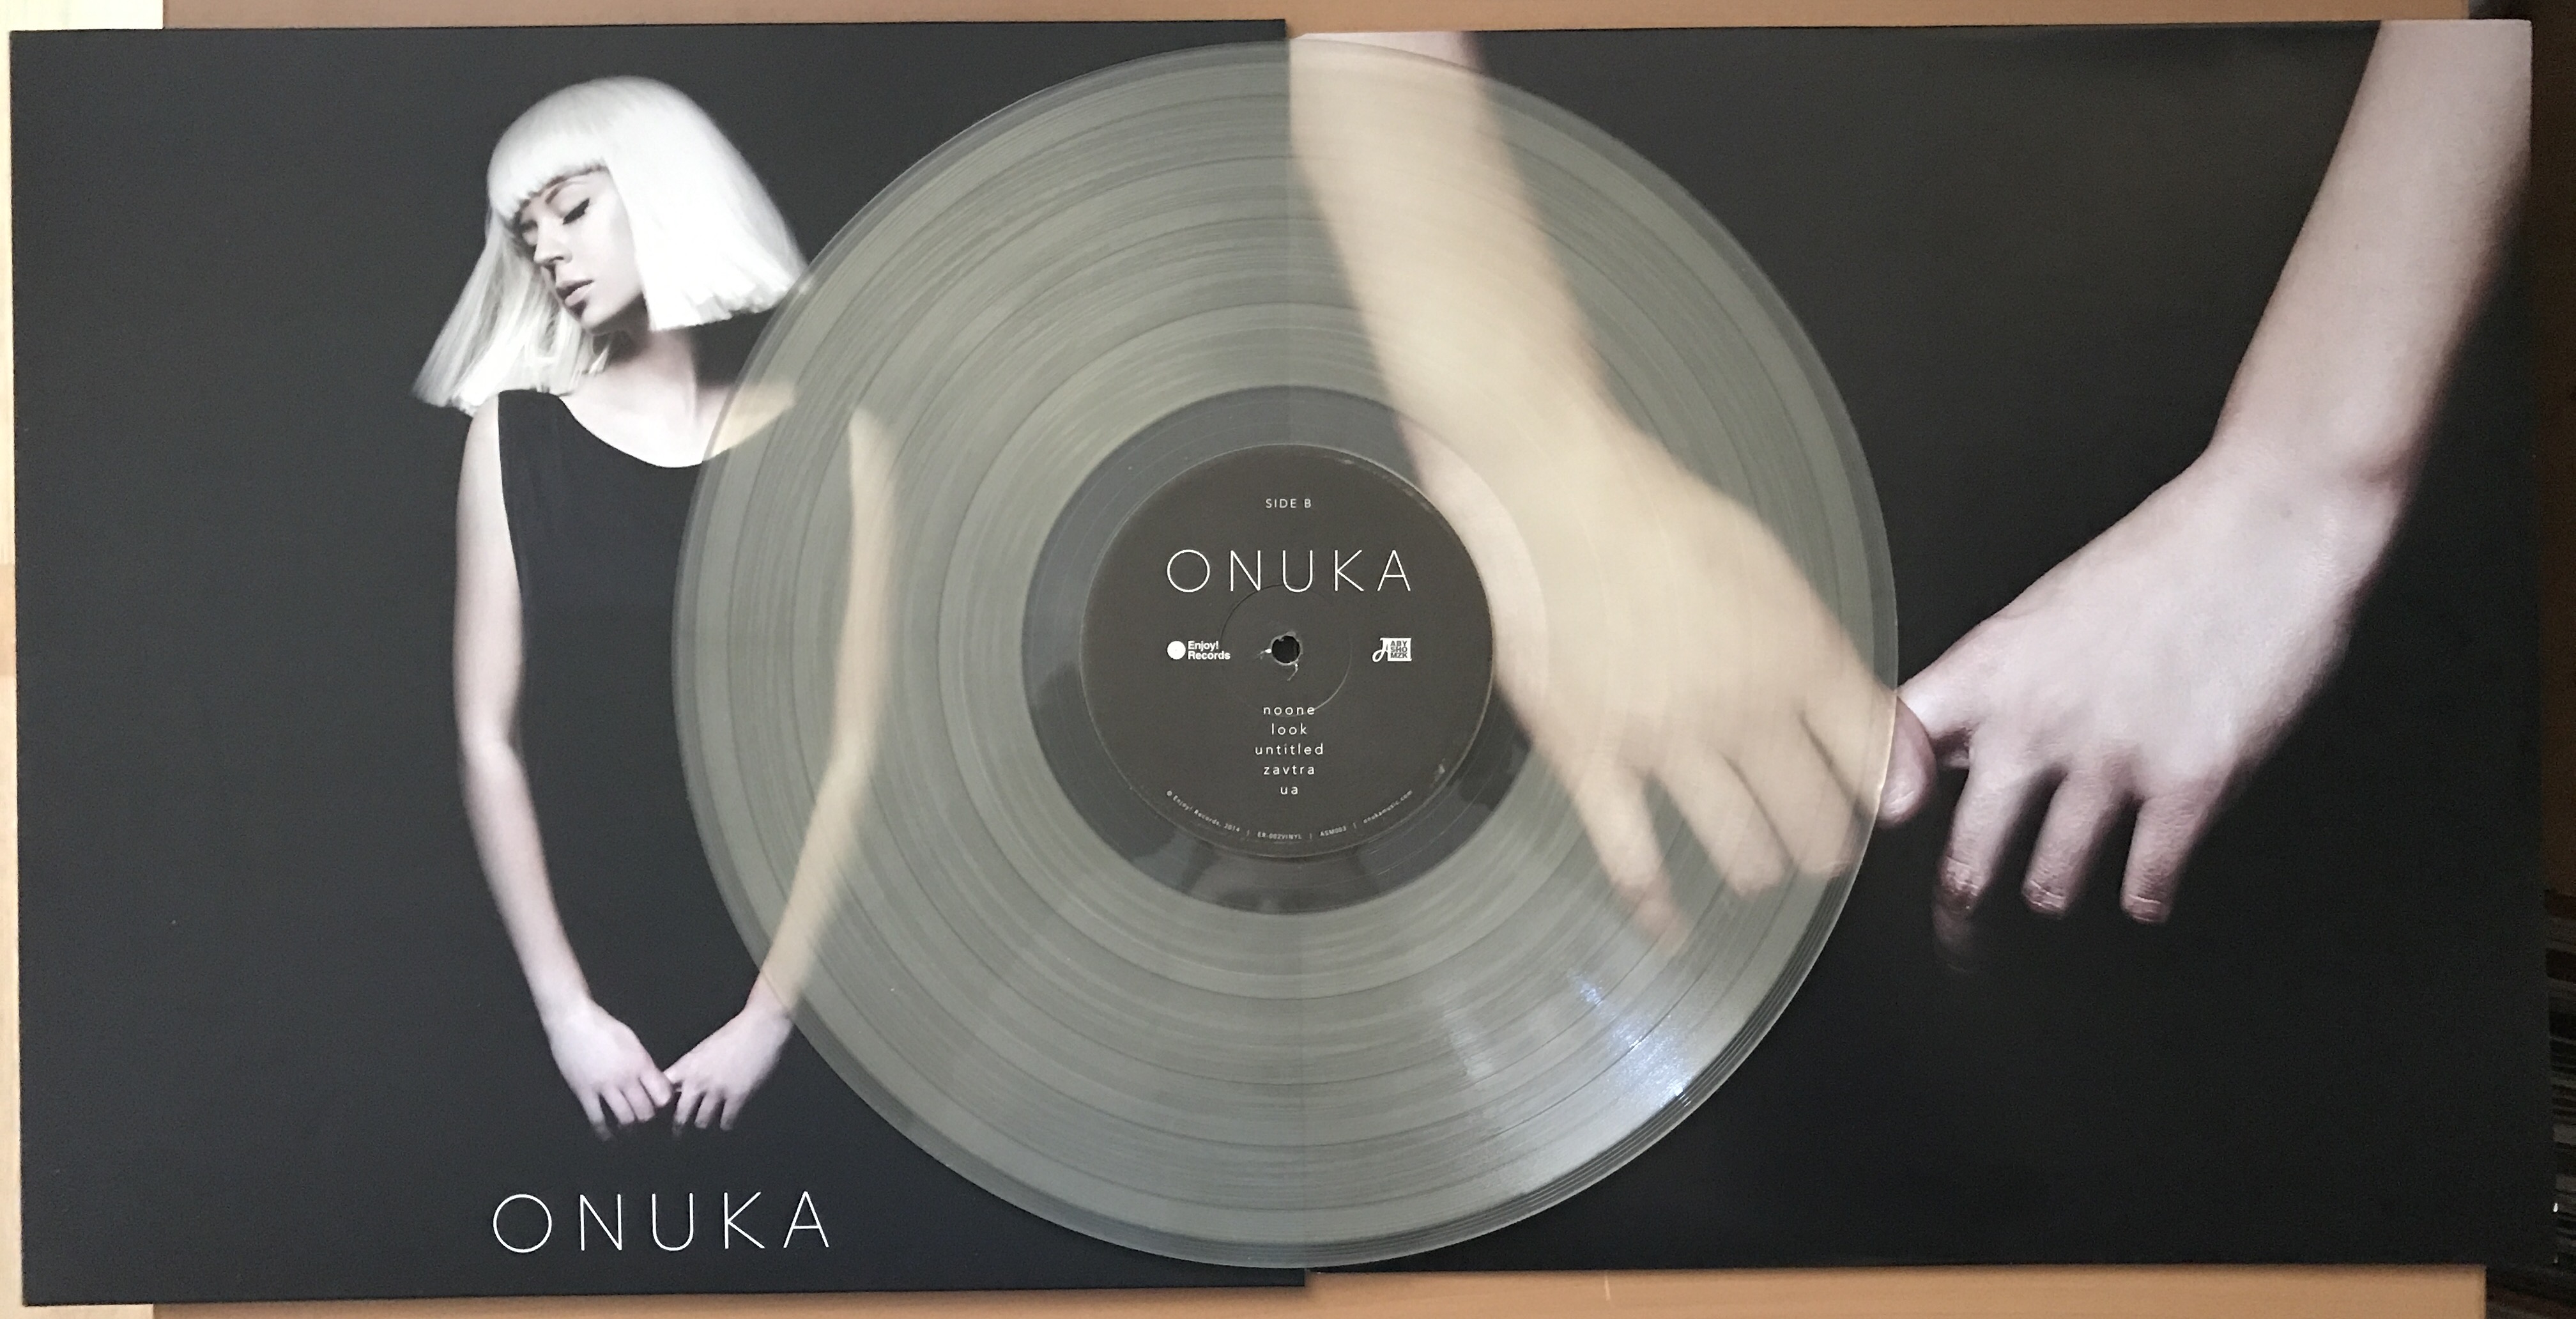 «Евровидения» пластинки ONUKA покупают Японии, Австралии, США»